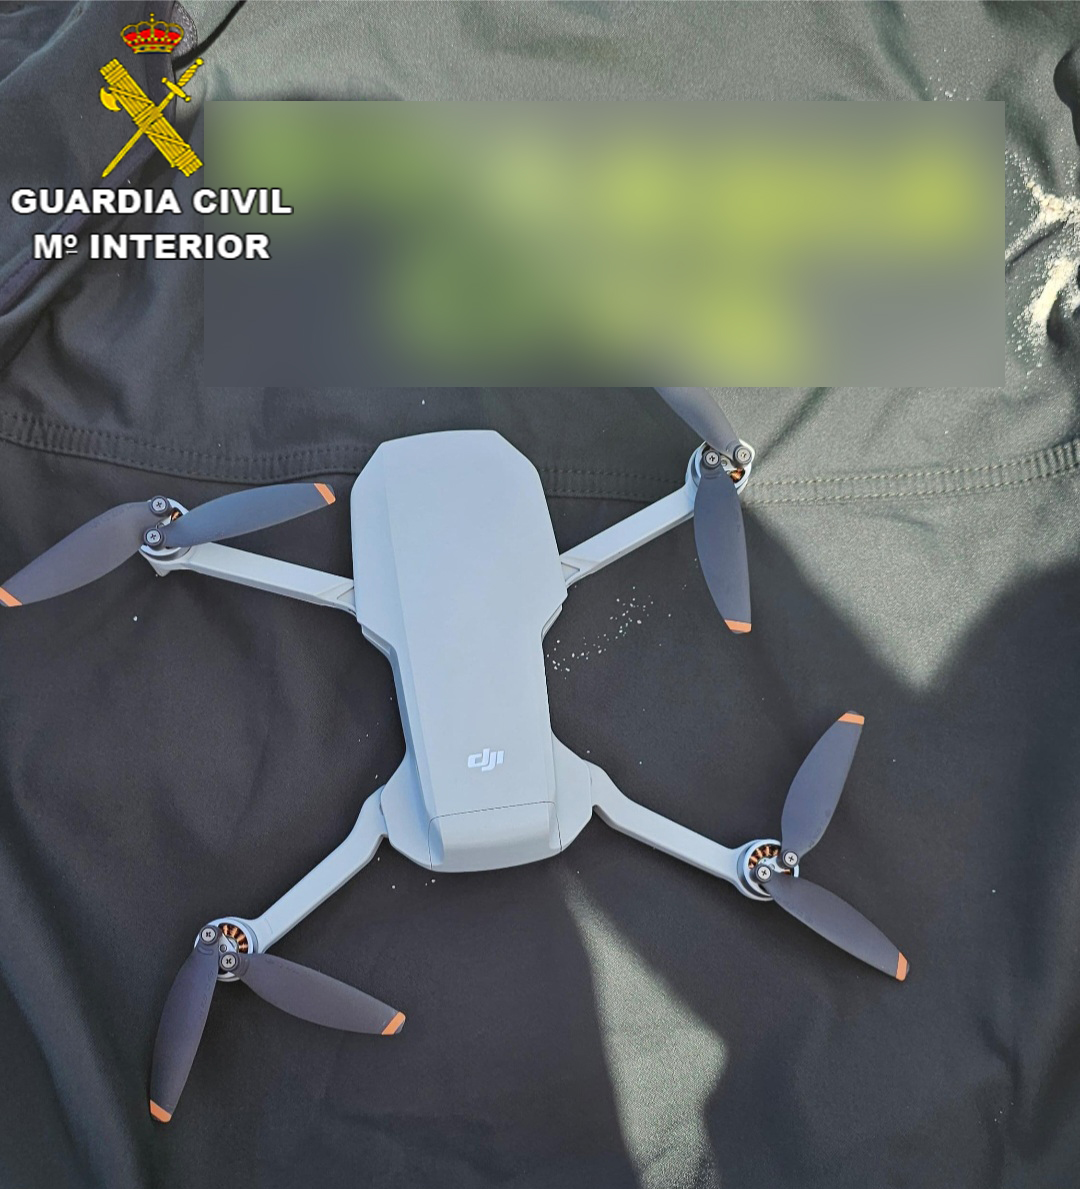 La Guardia Civil interceptó un dron vulnerando la protección del espacio aéreo durante la Vig-Bai